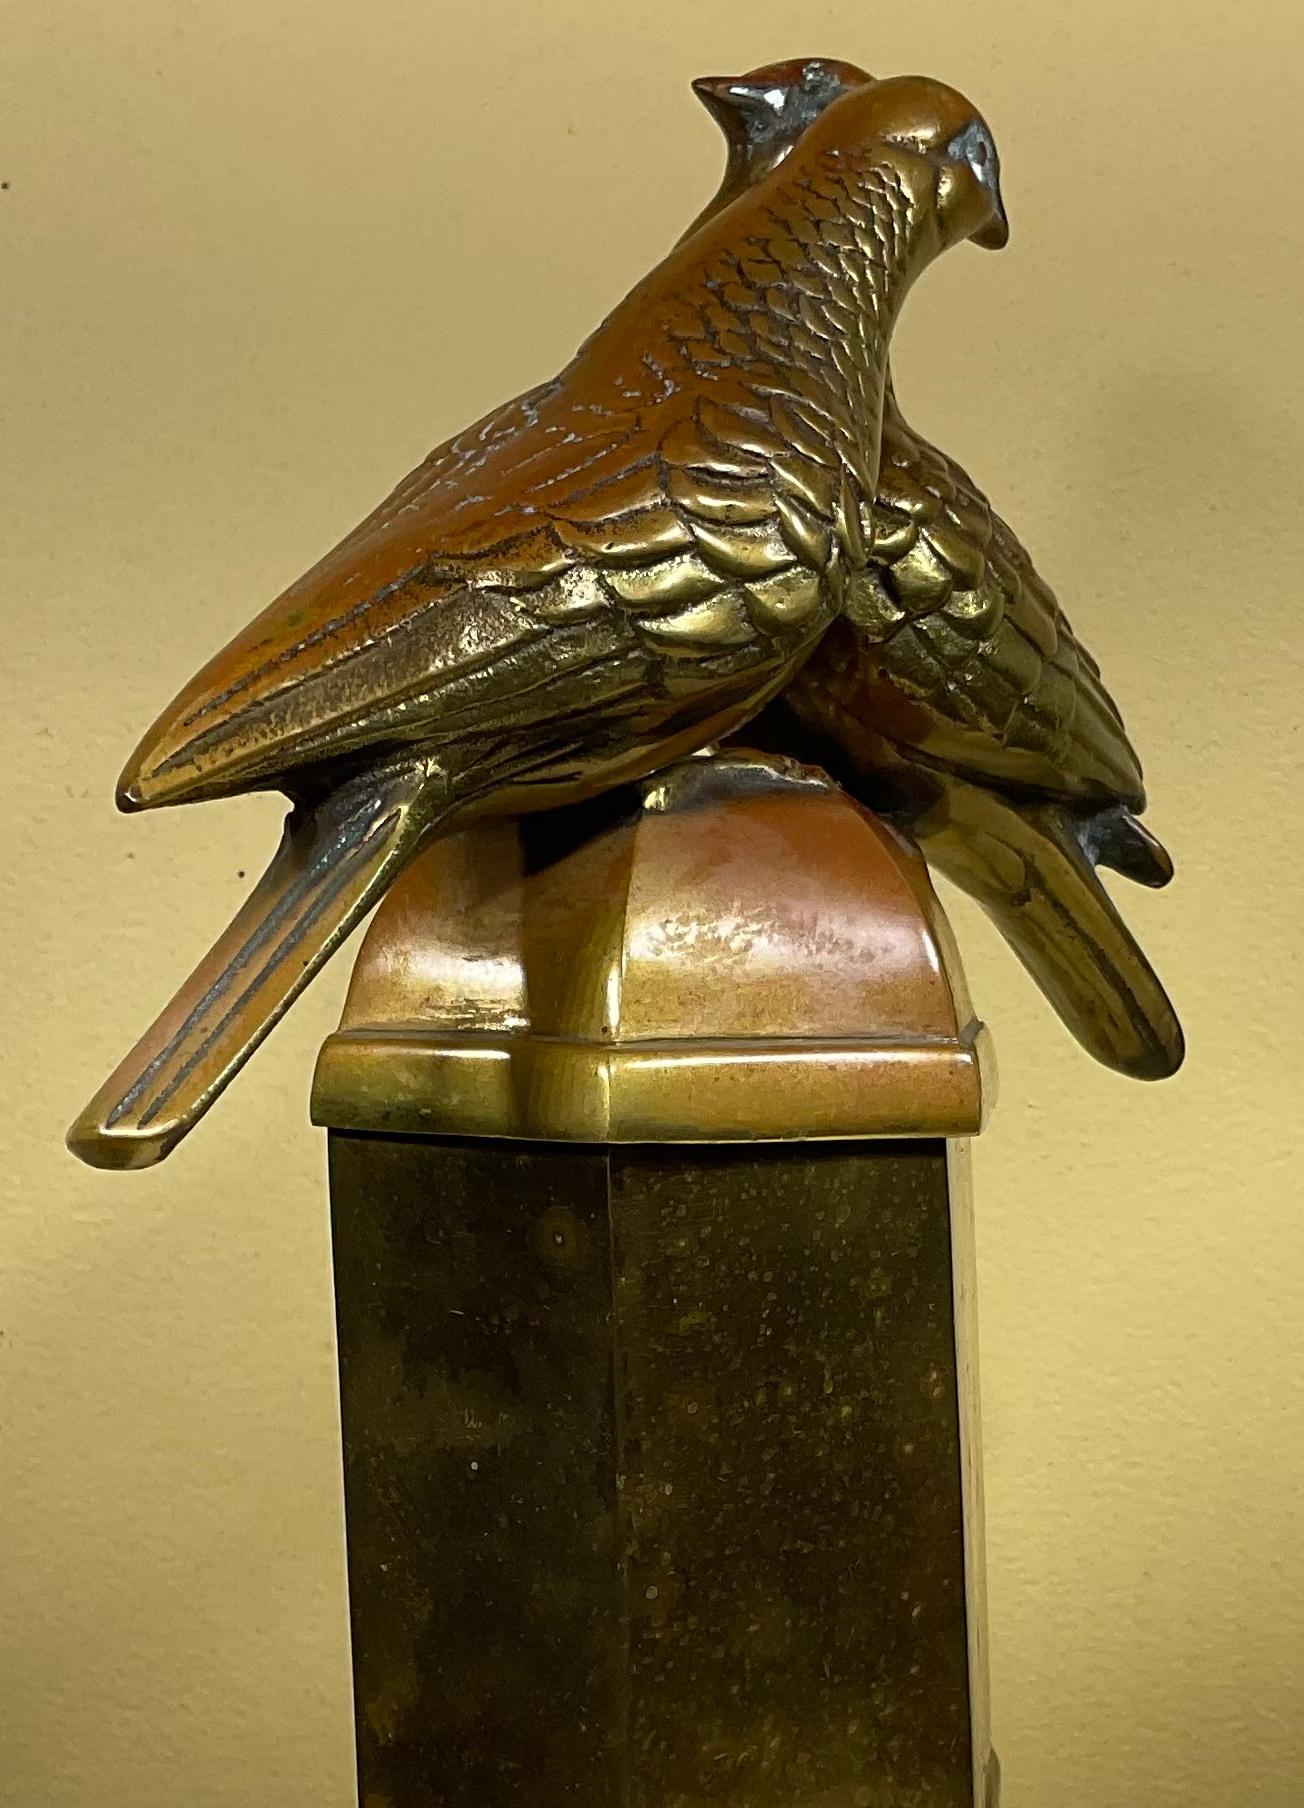 Schöne Neuheit Bronze-Box mit schönen Thema der beiden Liebe Vogel.
Eine exquisite Ergänzung für jeden Raum.